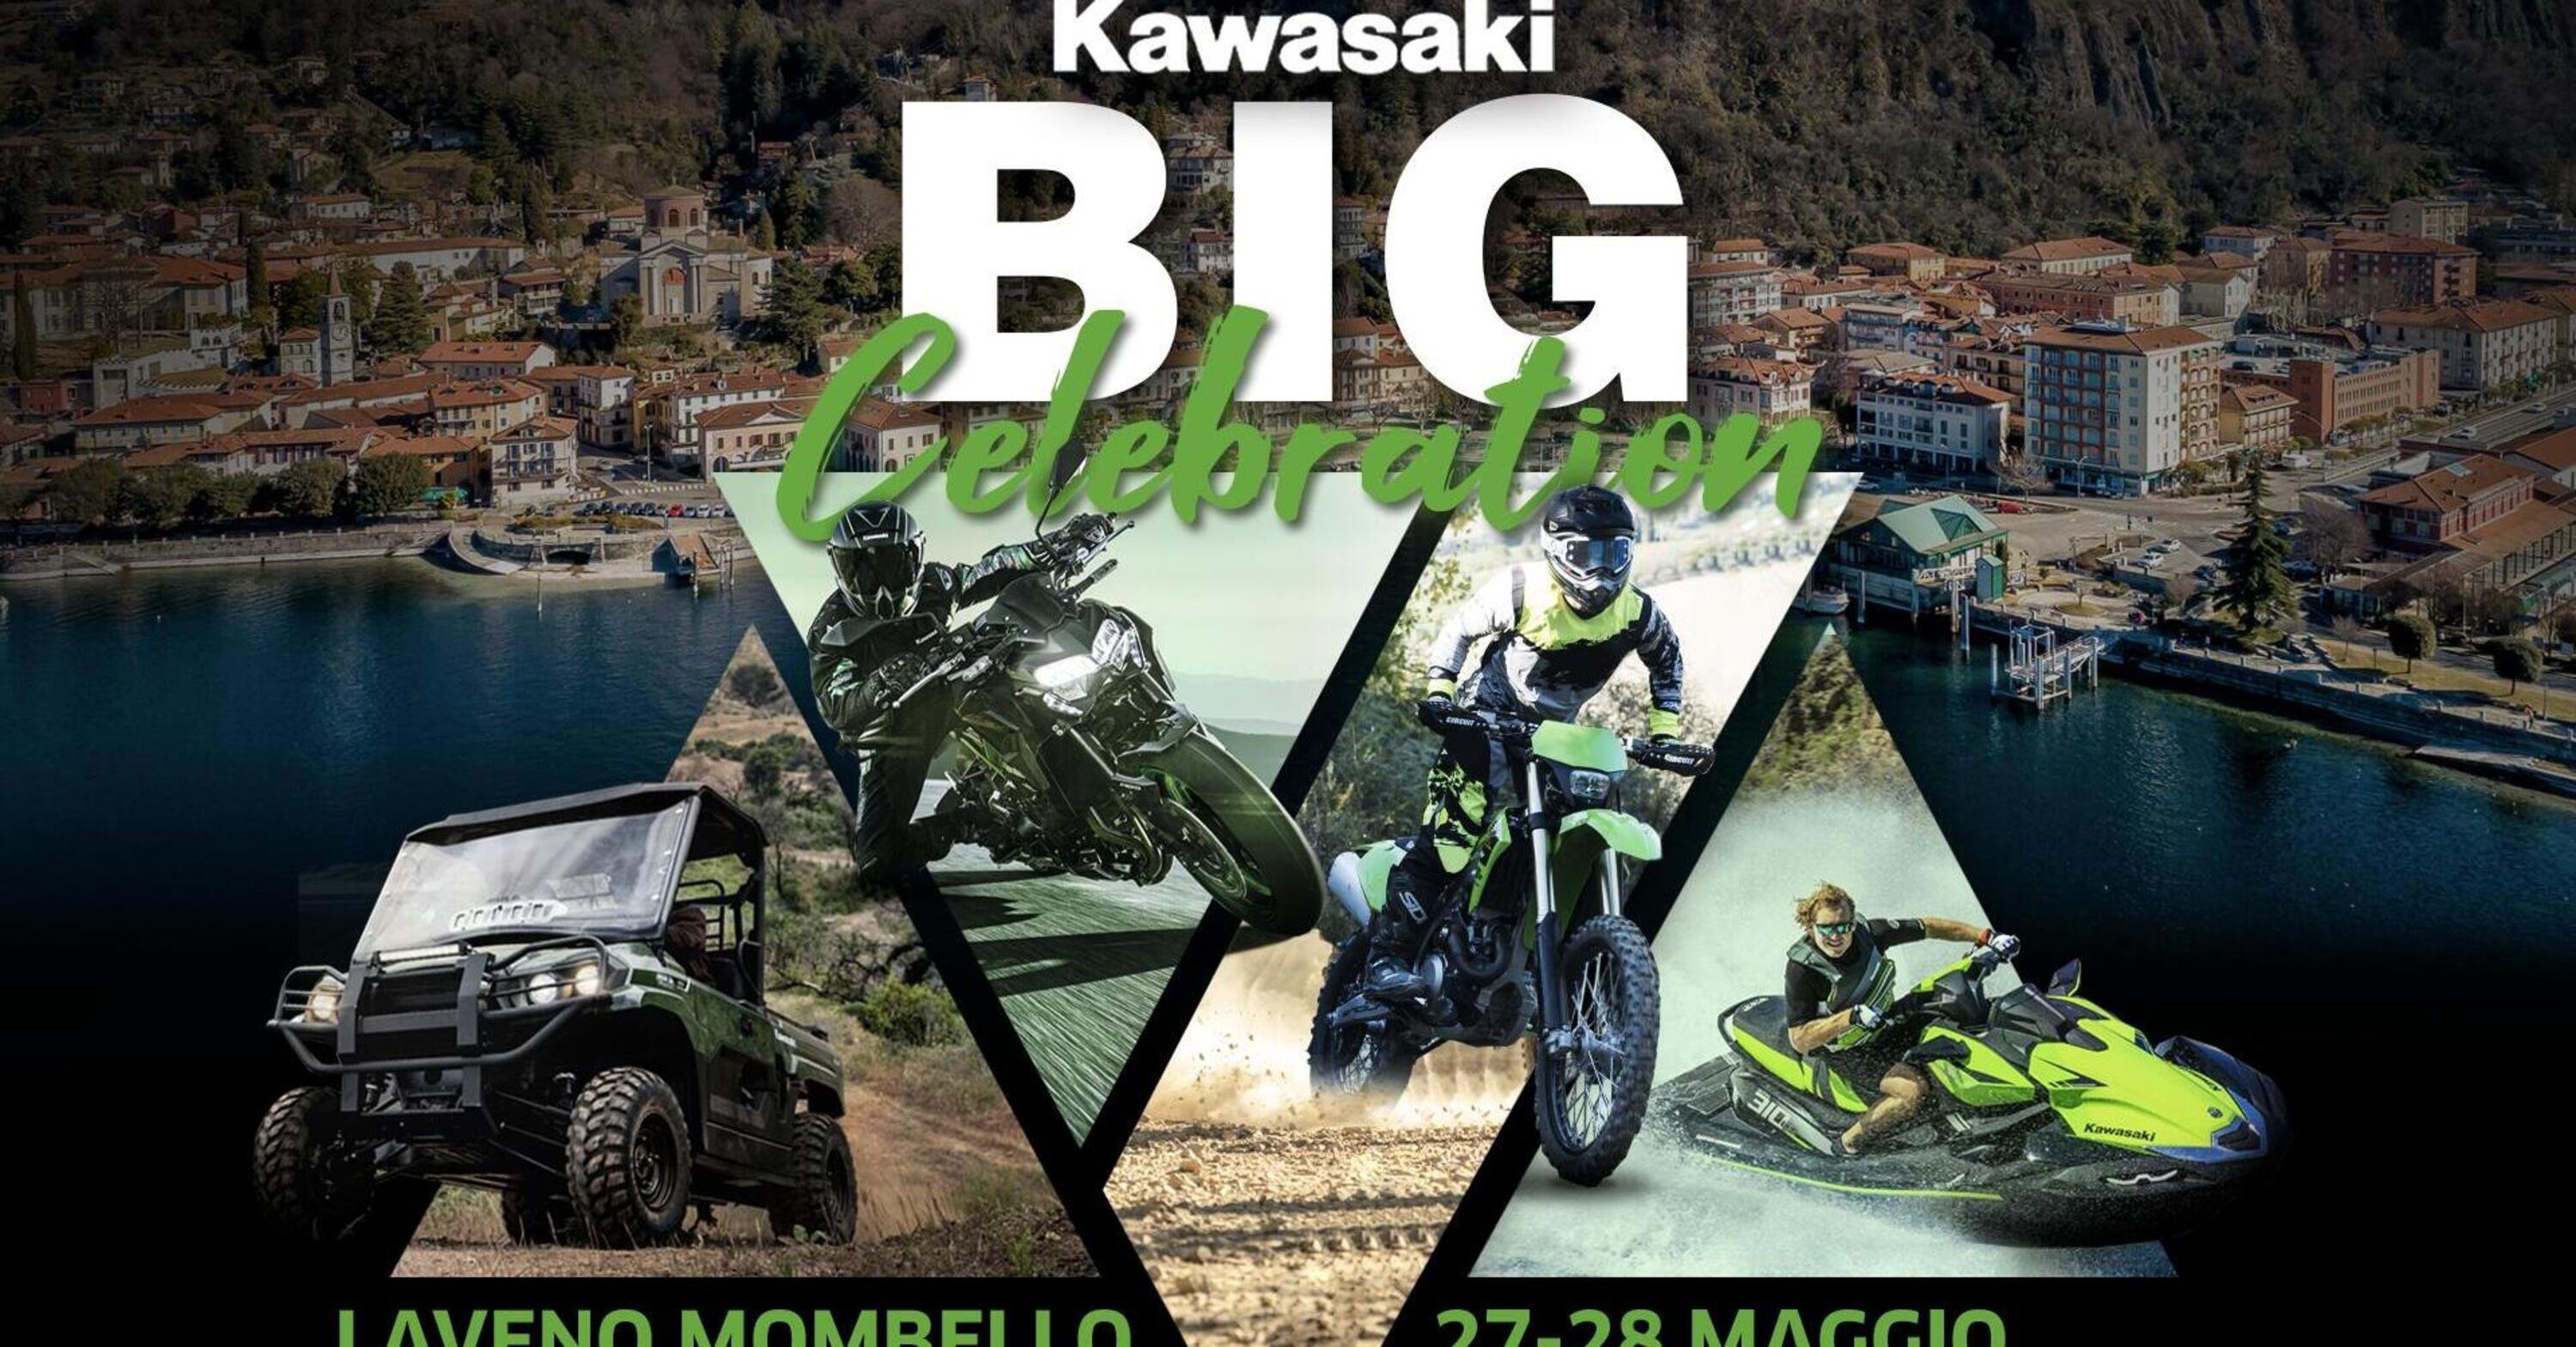 Laveno Mombello si tinge di verde per la  Kawasaki Big Celebration! 